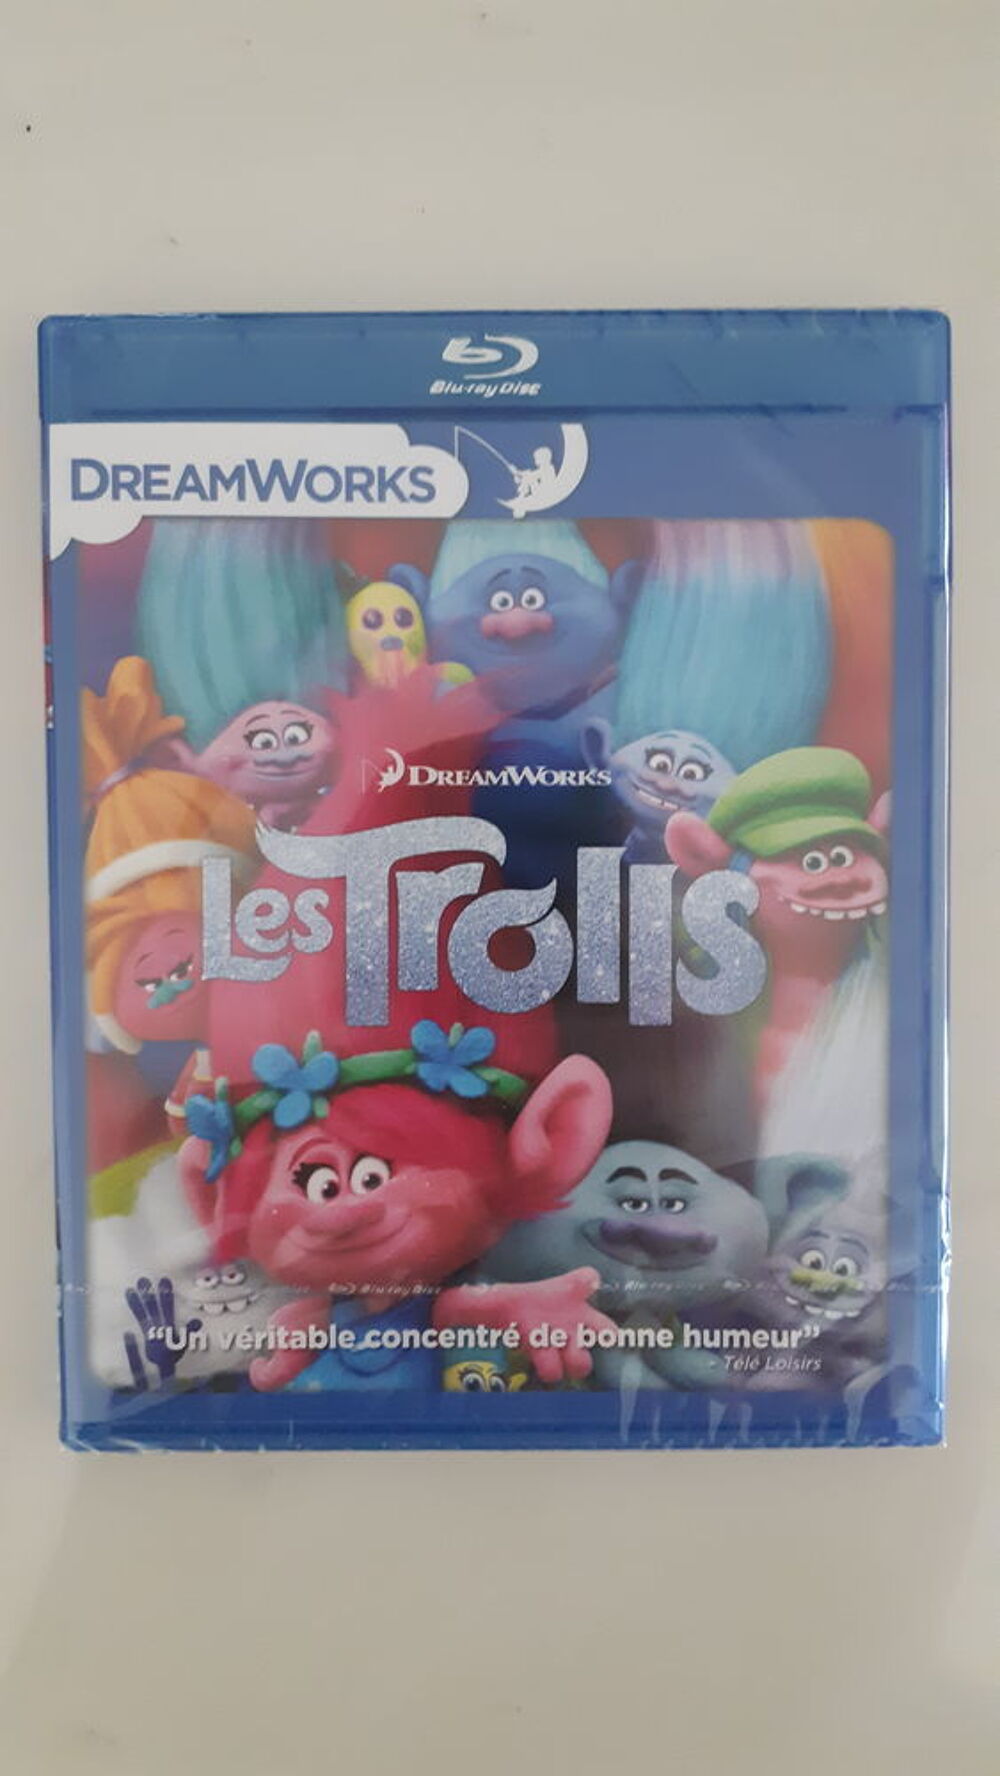 Les Trolls en Blu-ray Blu-ray Disc (BD, B-RD) DVD et blu-ray